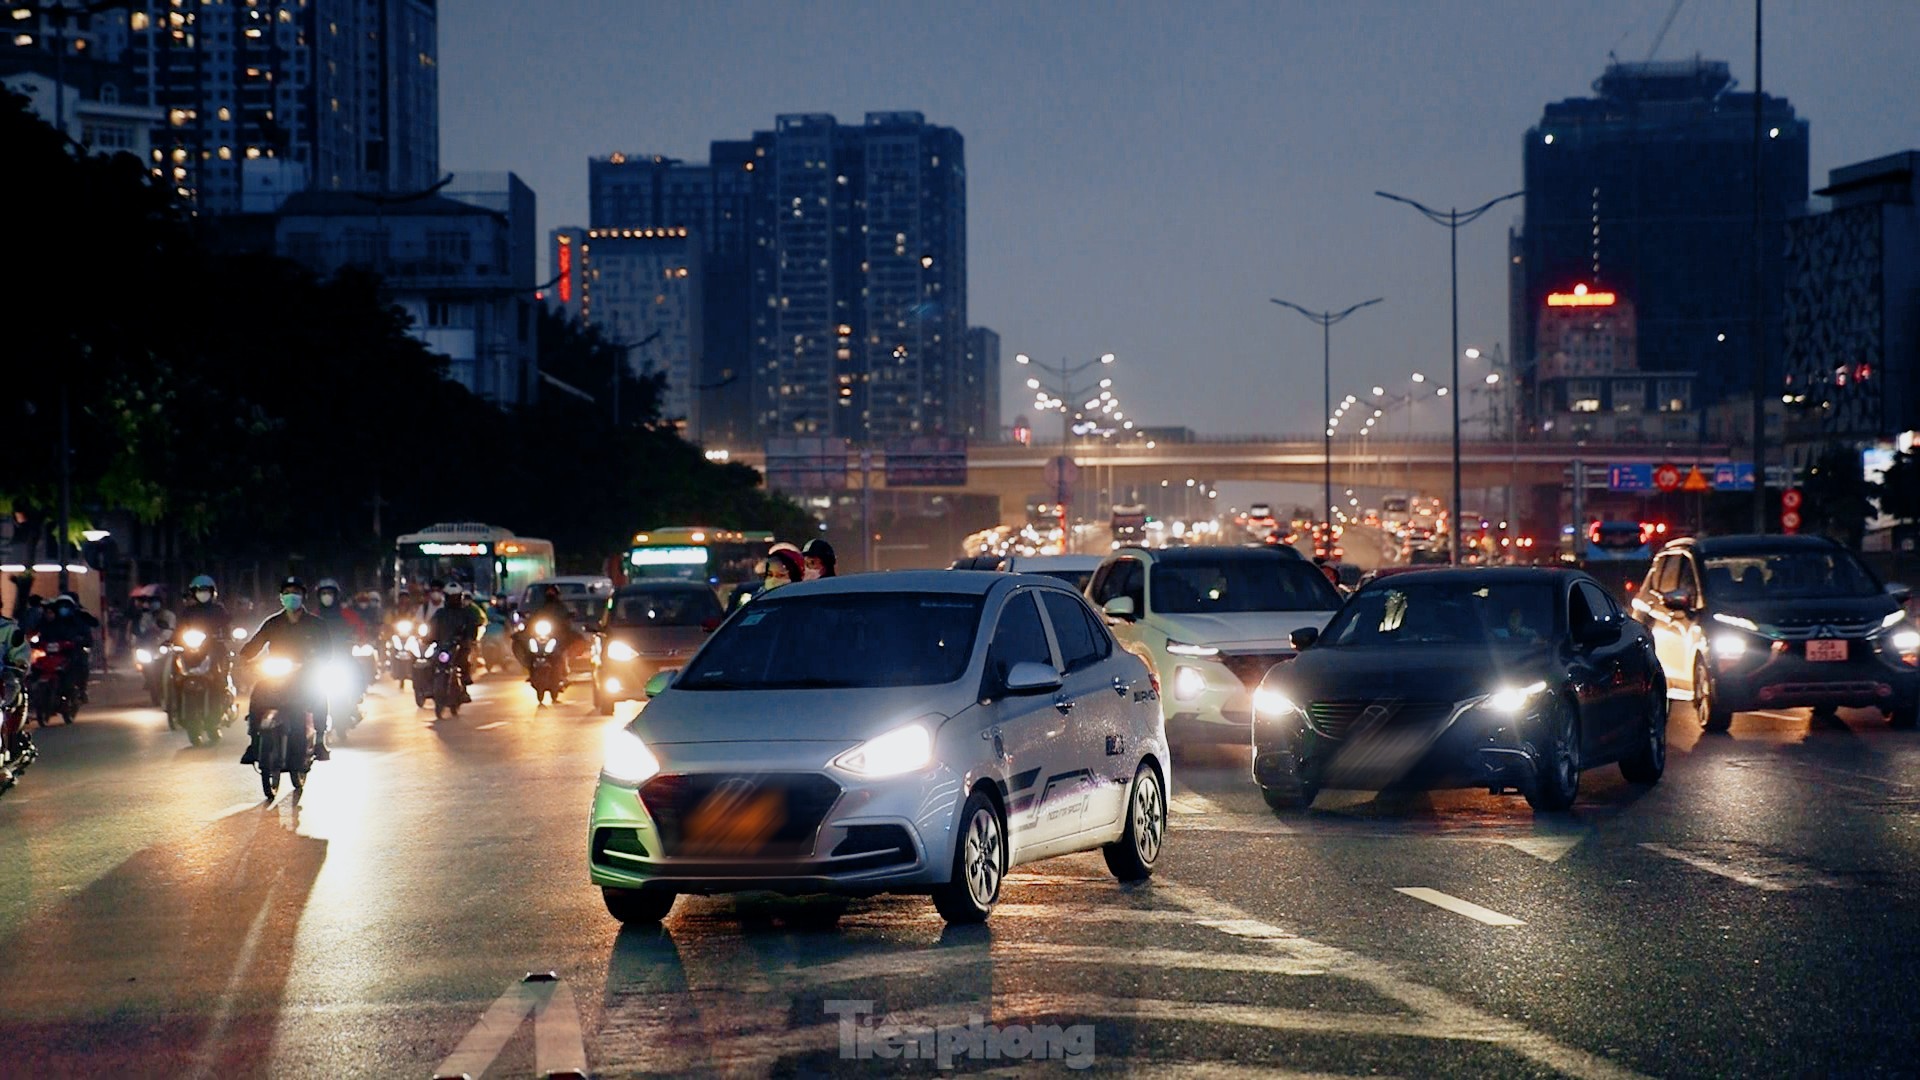 Thông xe cầu vượt Mai Dịch, vì sao giao thông vẫn hỗn loạn? ảnh 9